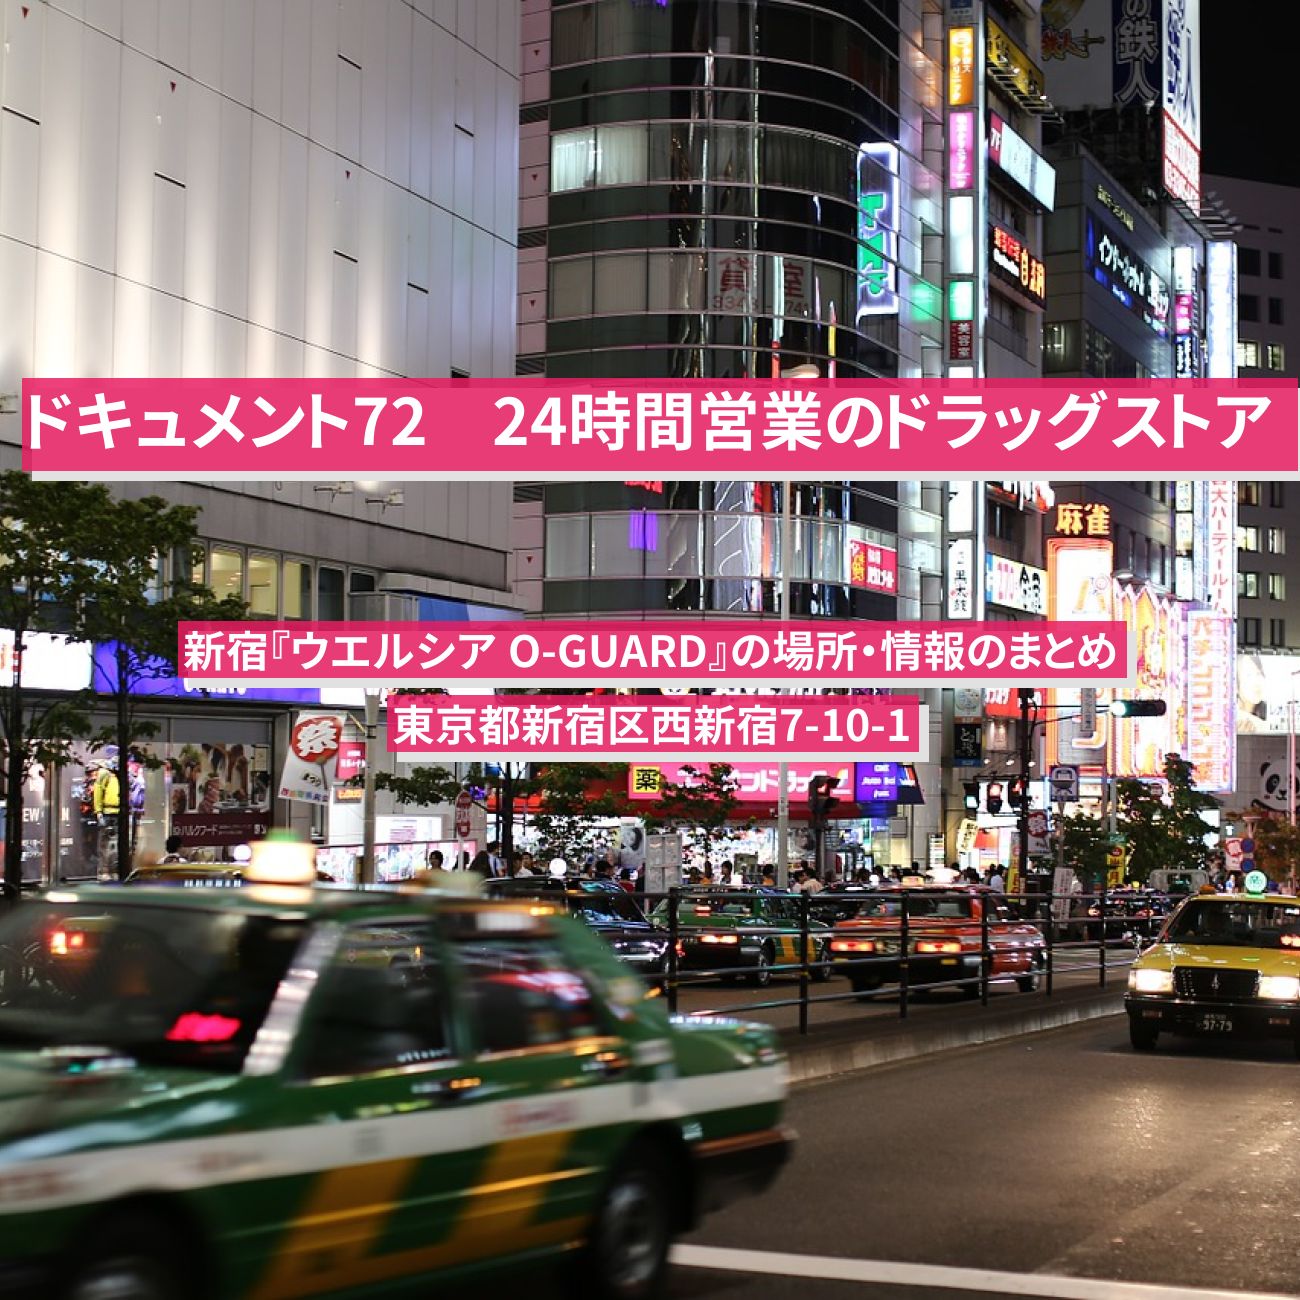 【NHK ドキュメント72時間】新宿の24時間営業のドラッグストア『ウエルシア O-GUARD』の場所・情報のまとめ